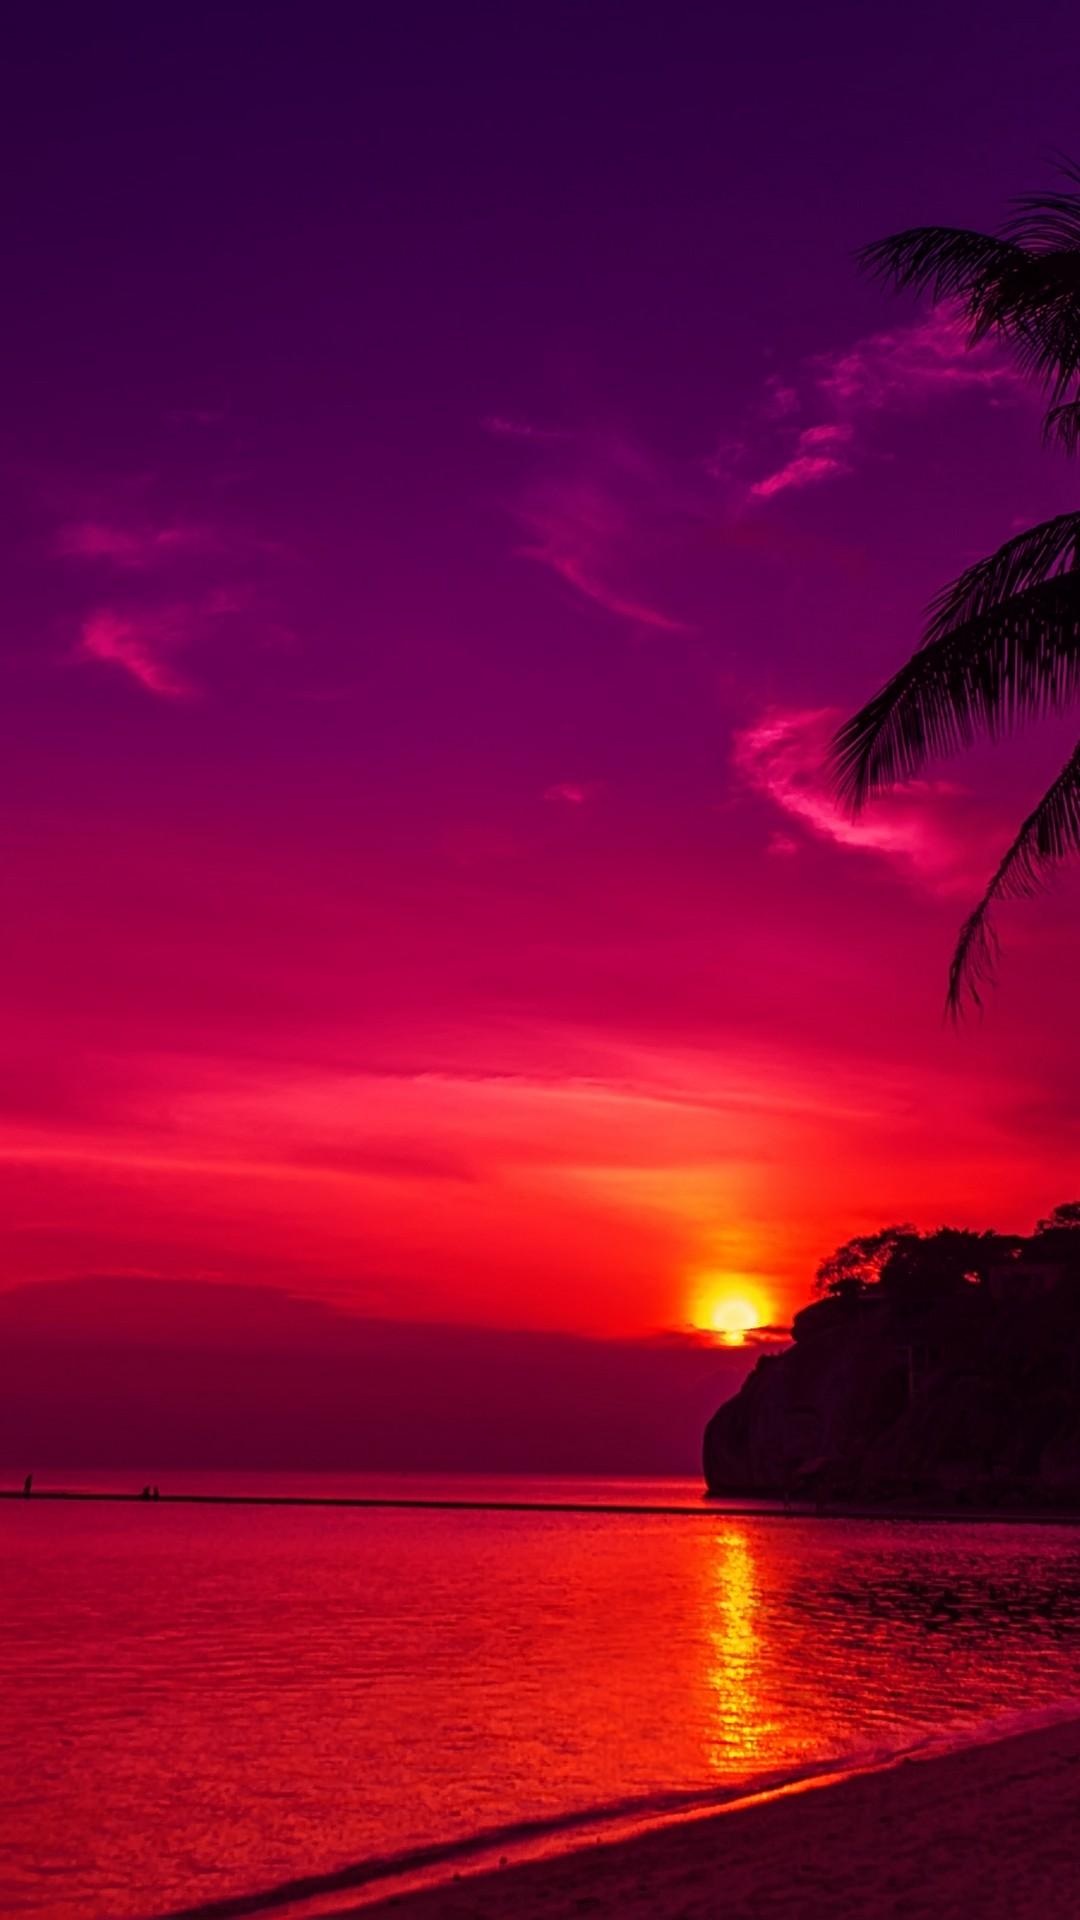 Beach Ultra Hd Iphone Sunset Wallpaper - Iphone Sunset Wallpapers